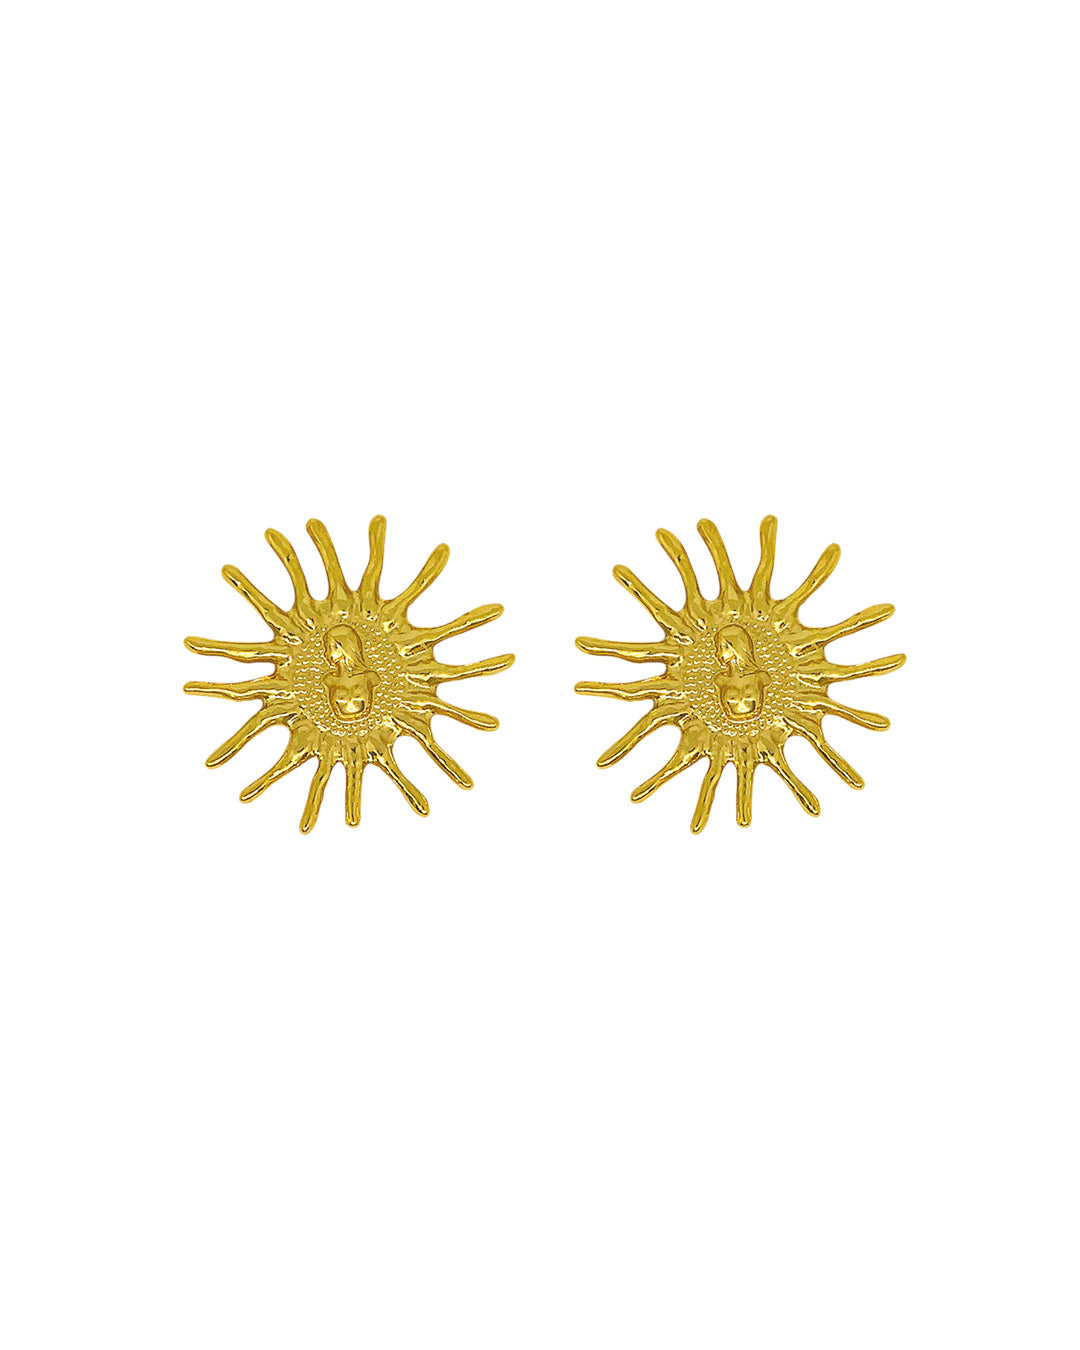 Gold Plated Zamak Handmade Earrings - Silver Plated Handmade Earrings, Aretes Bañados en Oro o Plata